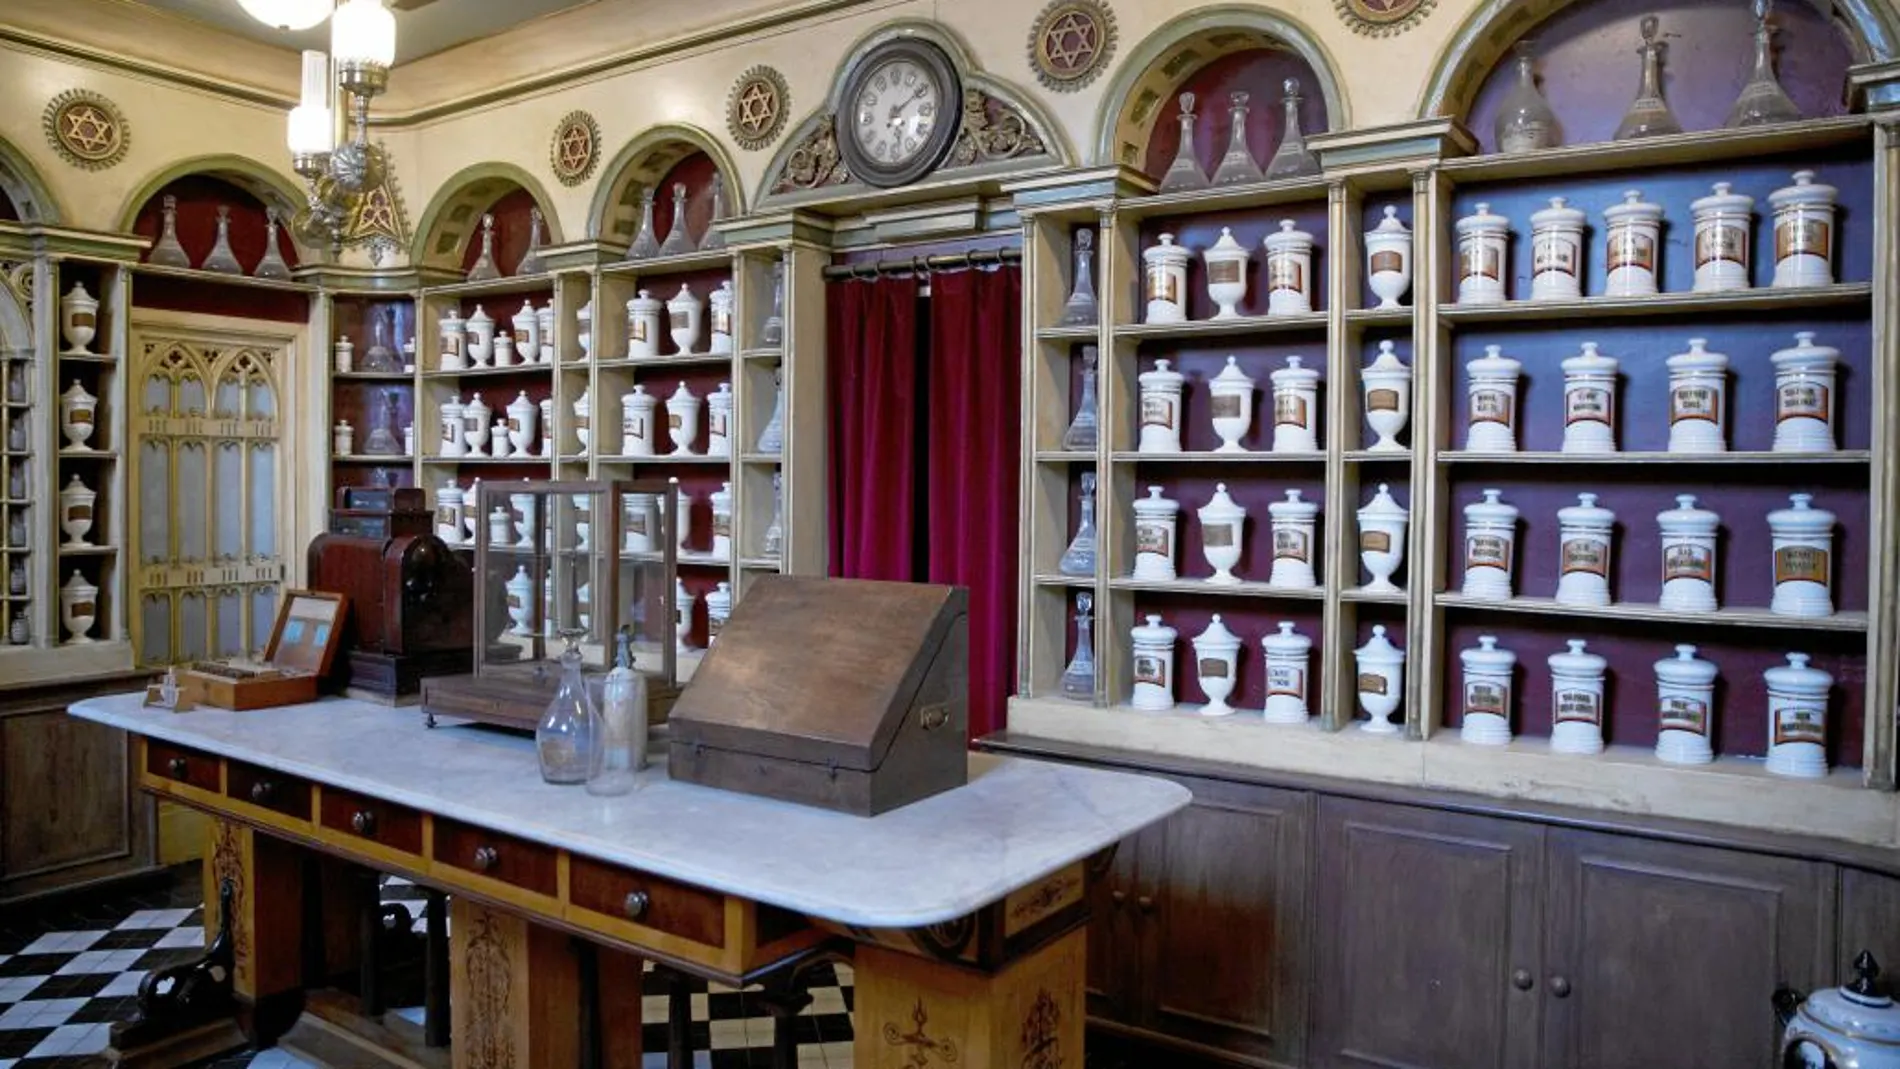 Farmacia que ocupó la madrileña plaza de Santo Domingo en el siglo XIX, una de los seis dispensarios que se pueden ver en el recorrido del museo